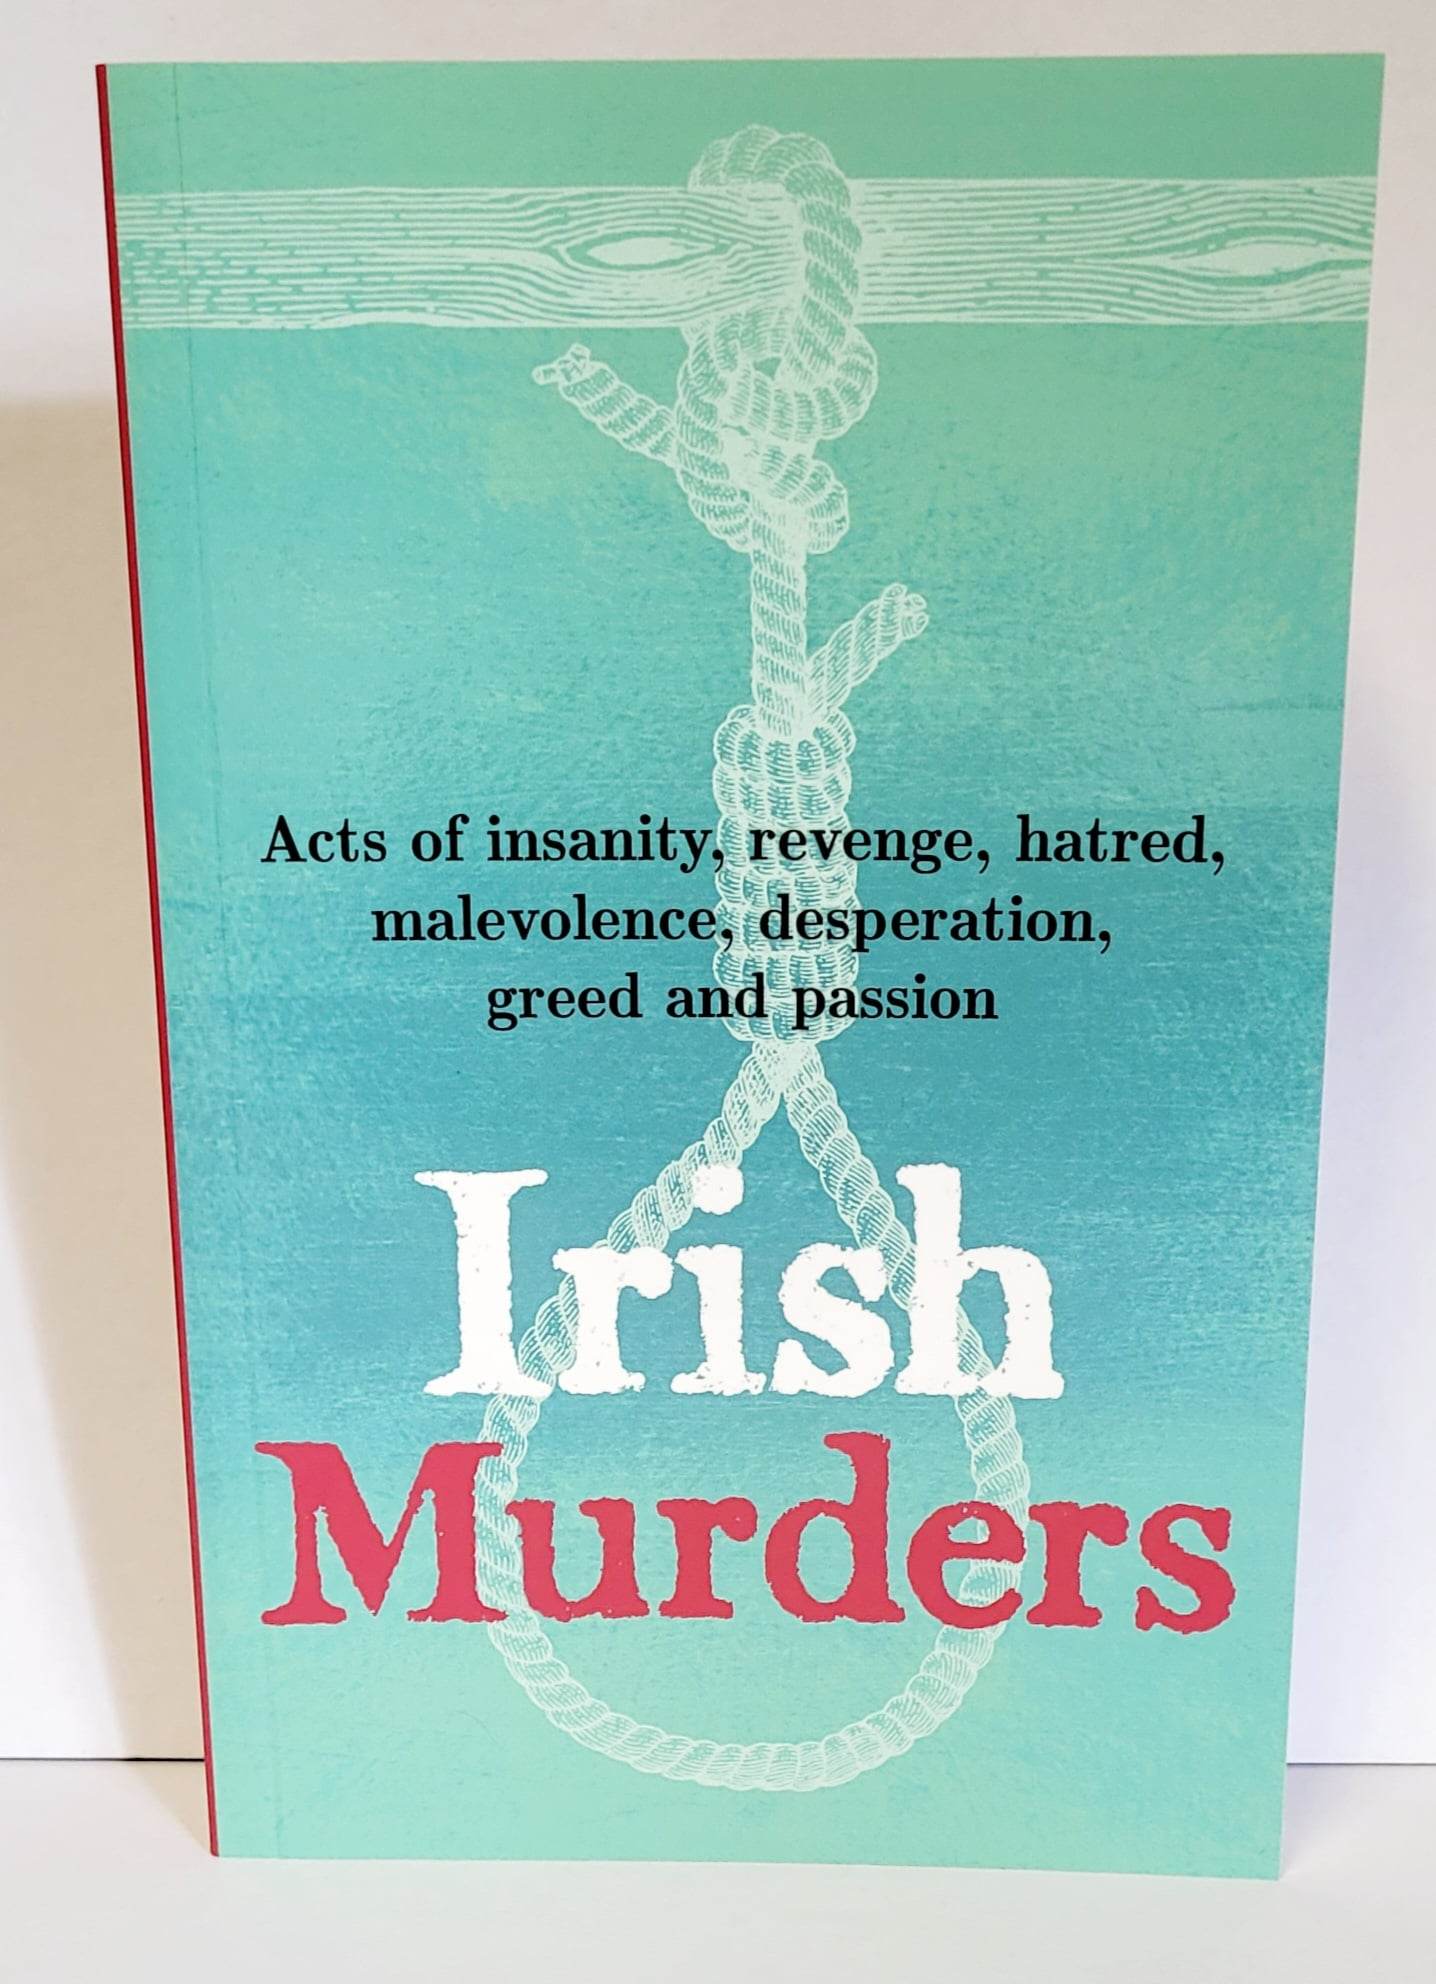 Irish Murders